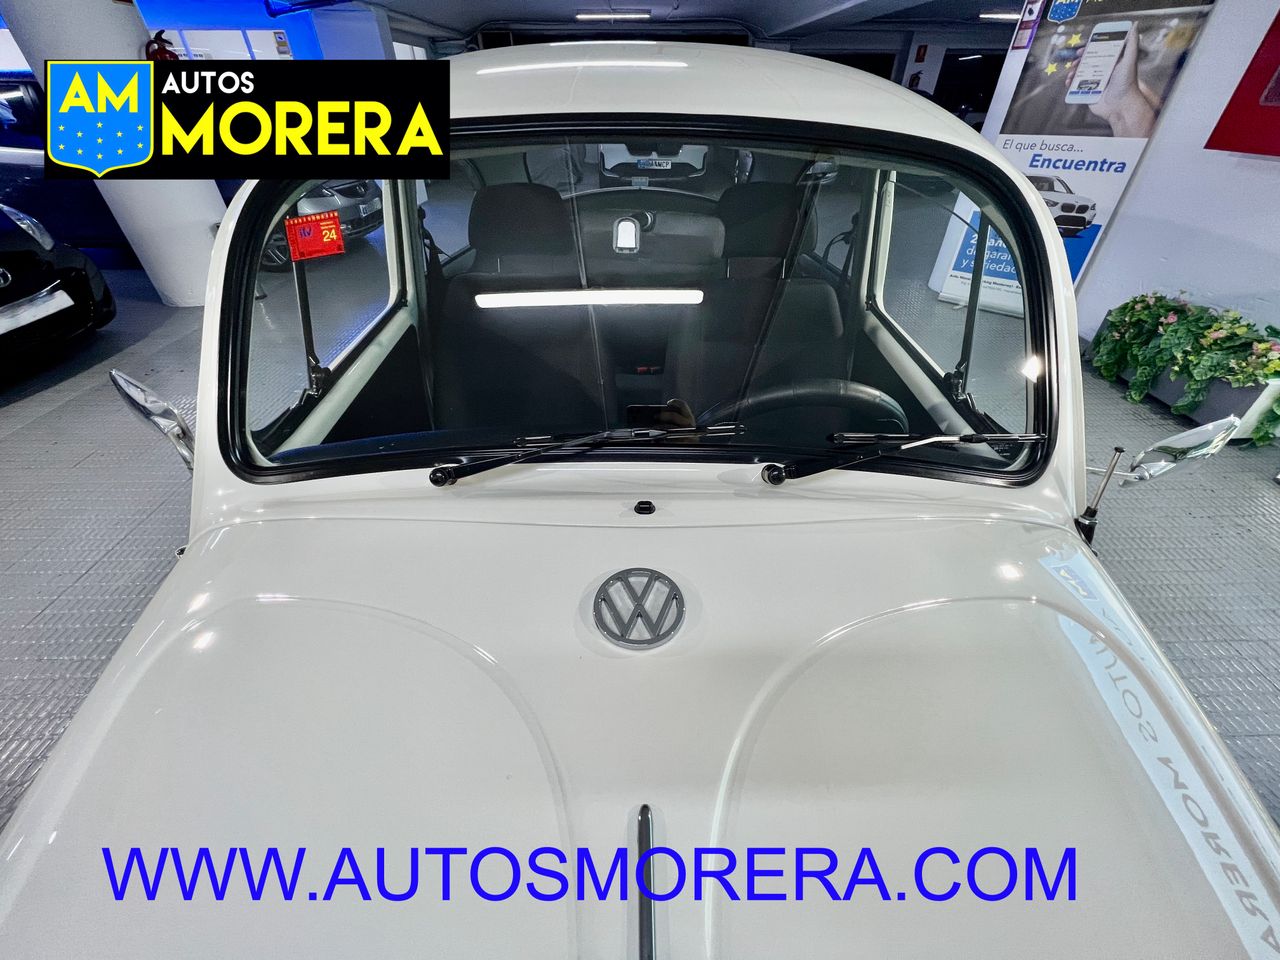 Foto Volkswagen Beetle 15